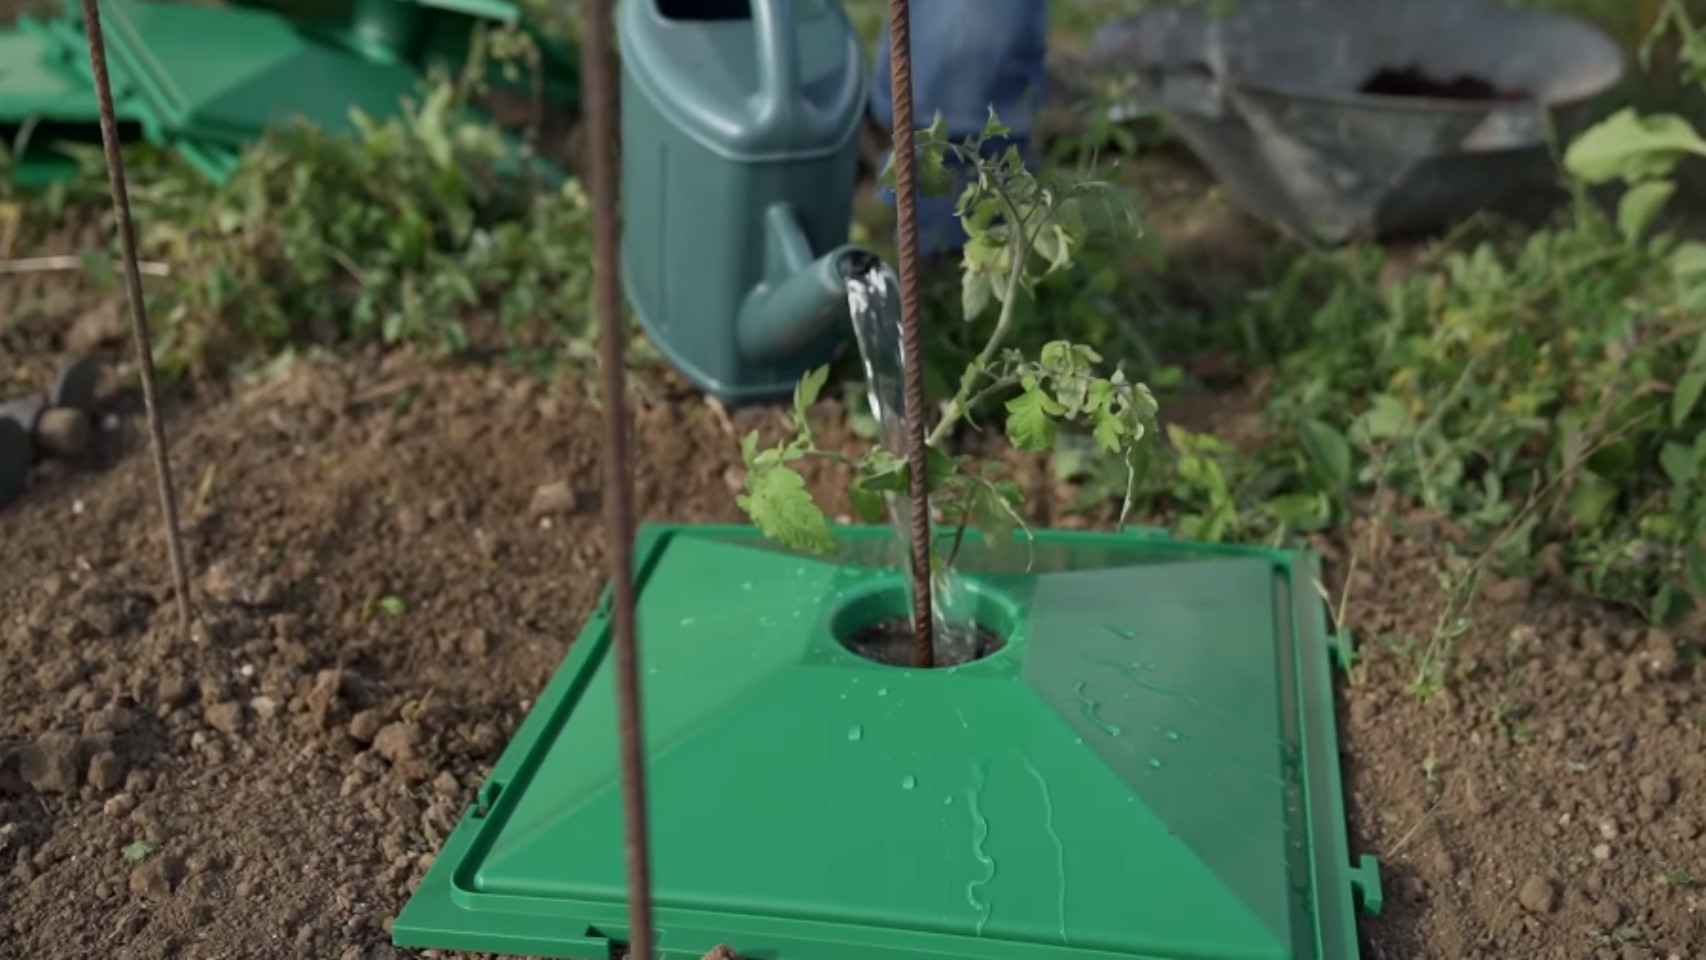 Una persona añadiendo agua a una planta de tomate que usa el invento.